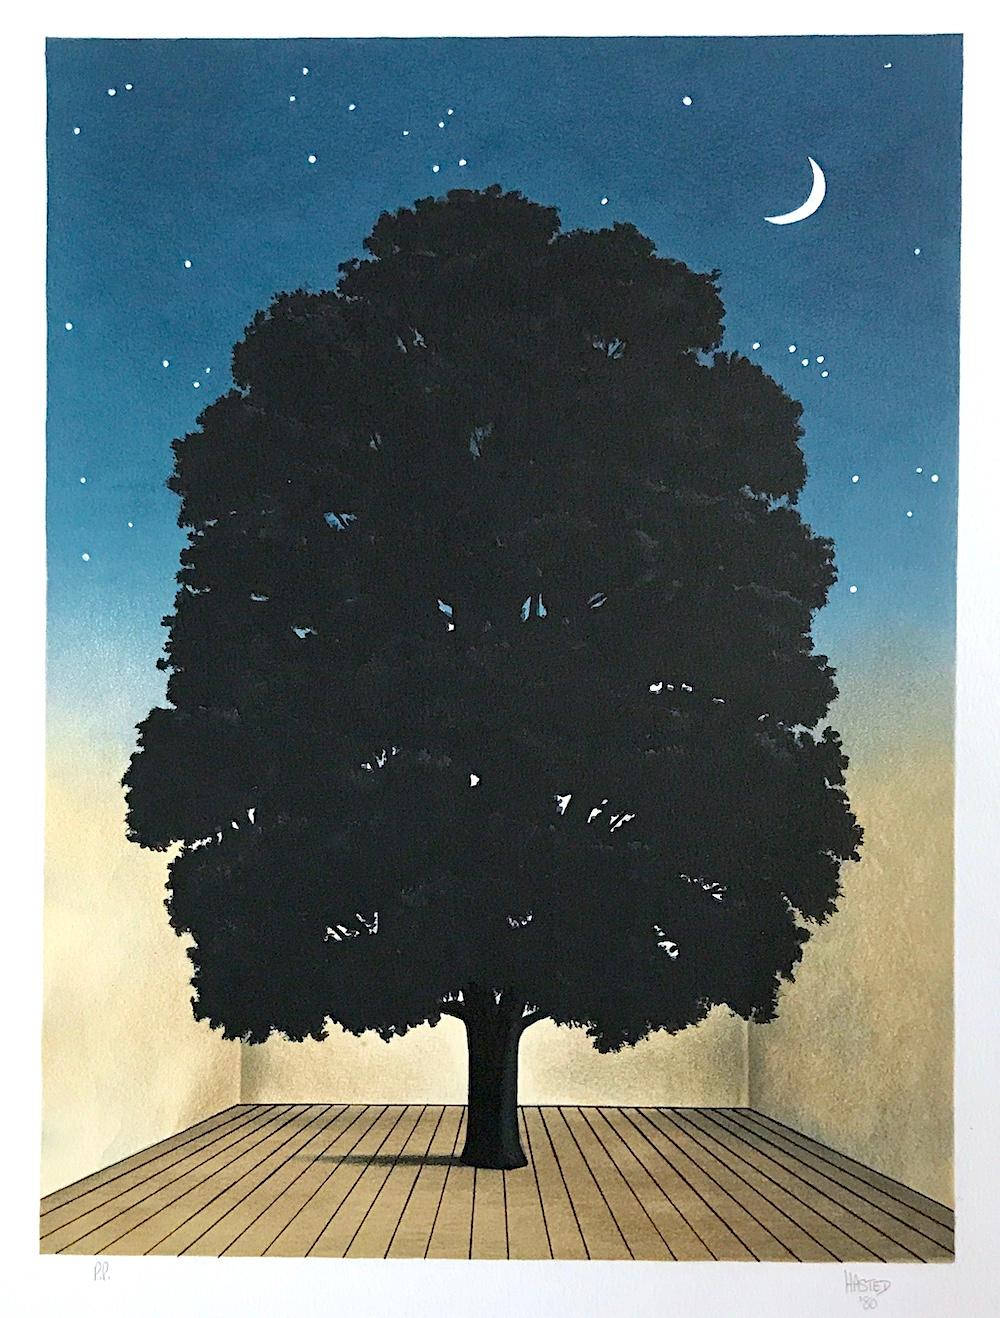 Interior Print Michael Hasted - SONG OF PRAISE, lithographie dessinée à la main, portrait d'arbre, ciel de nuit, croissant de lune